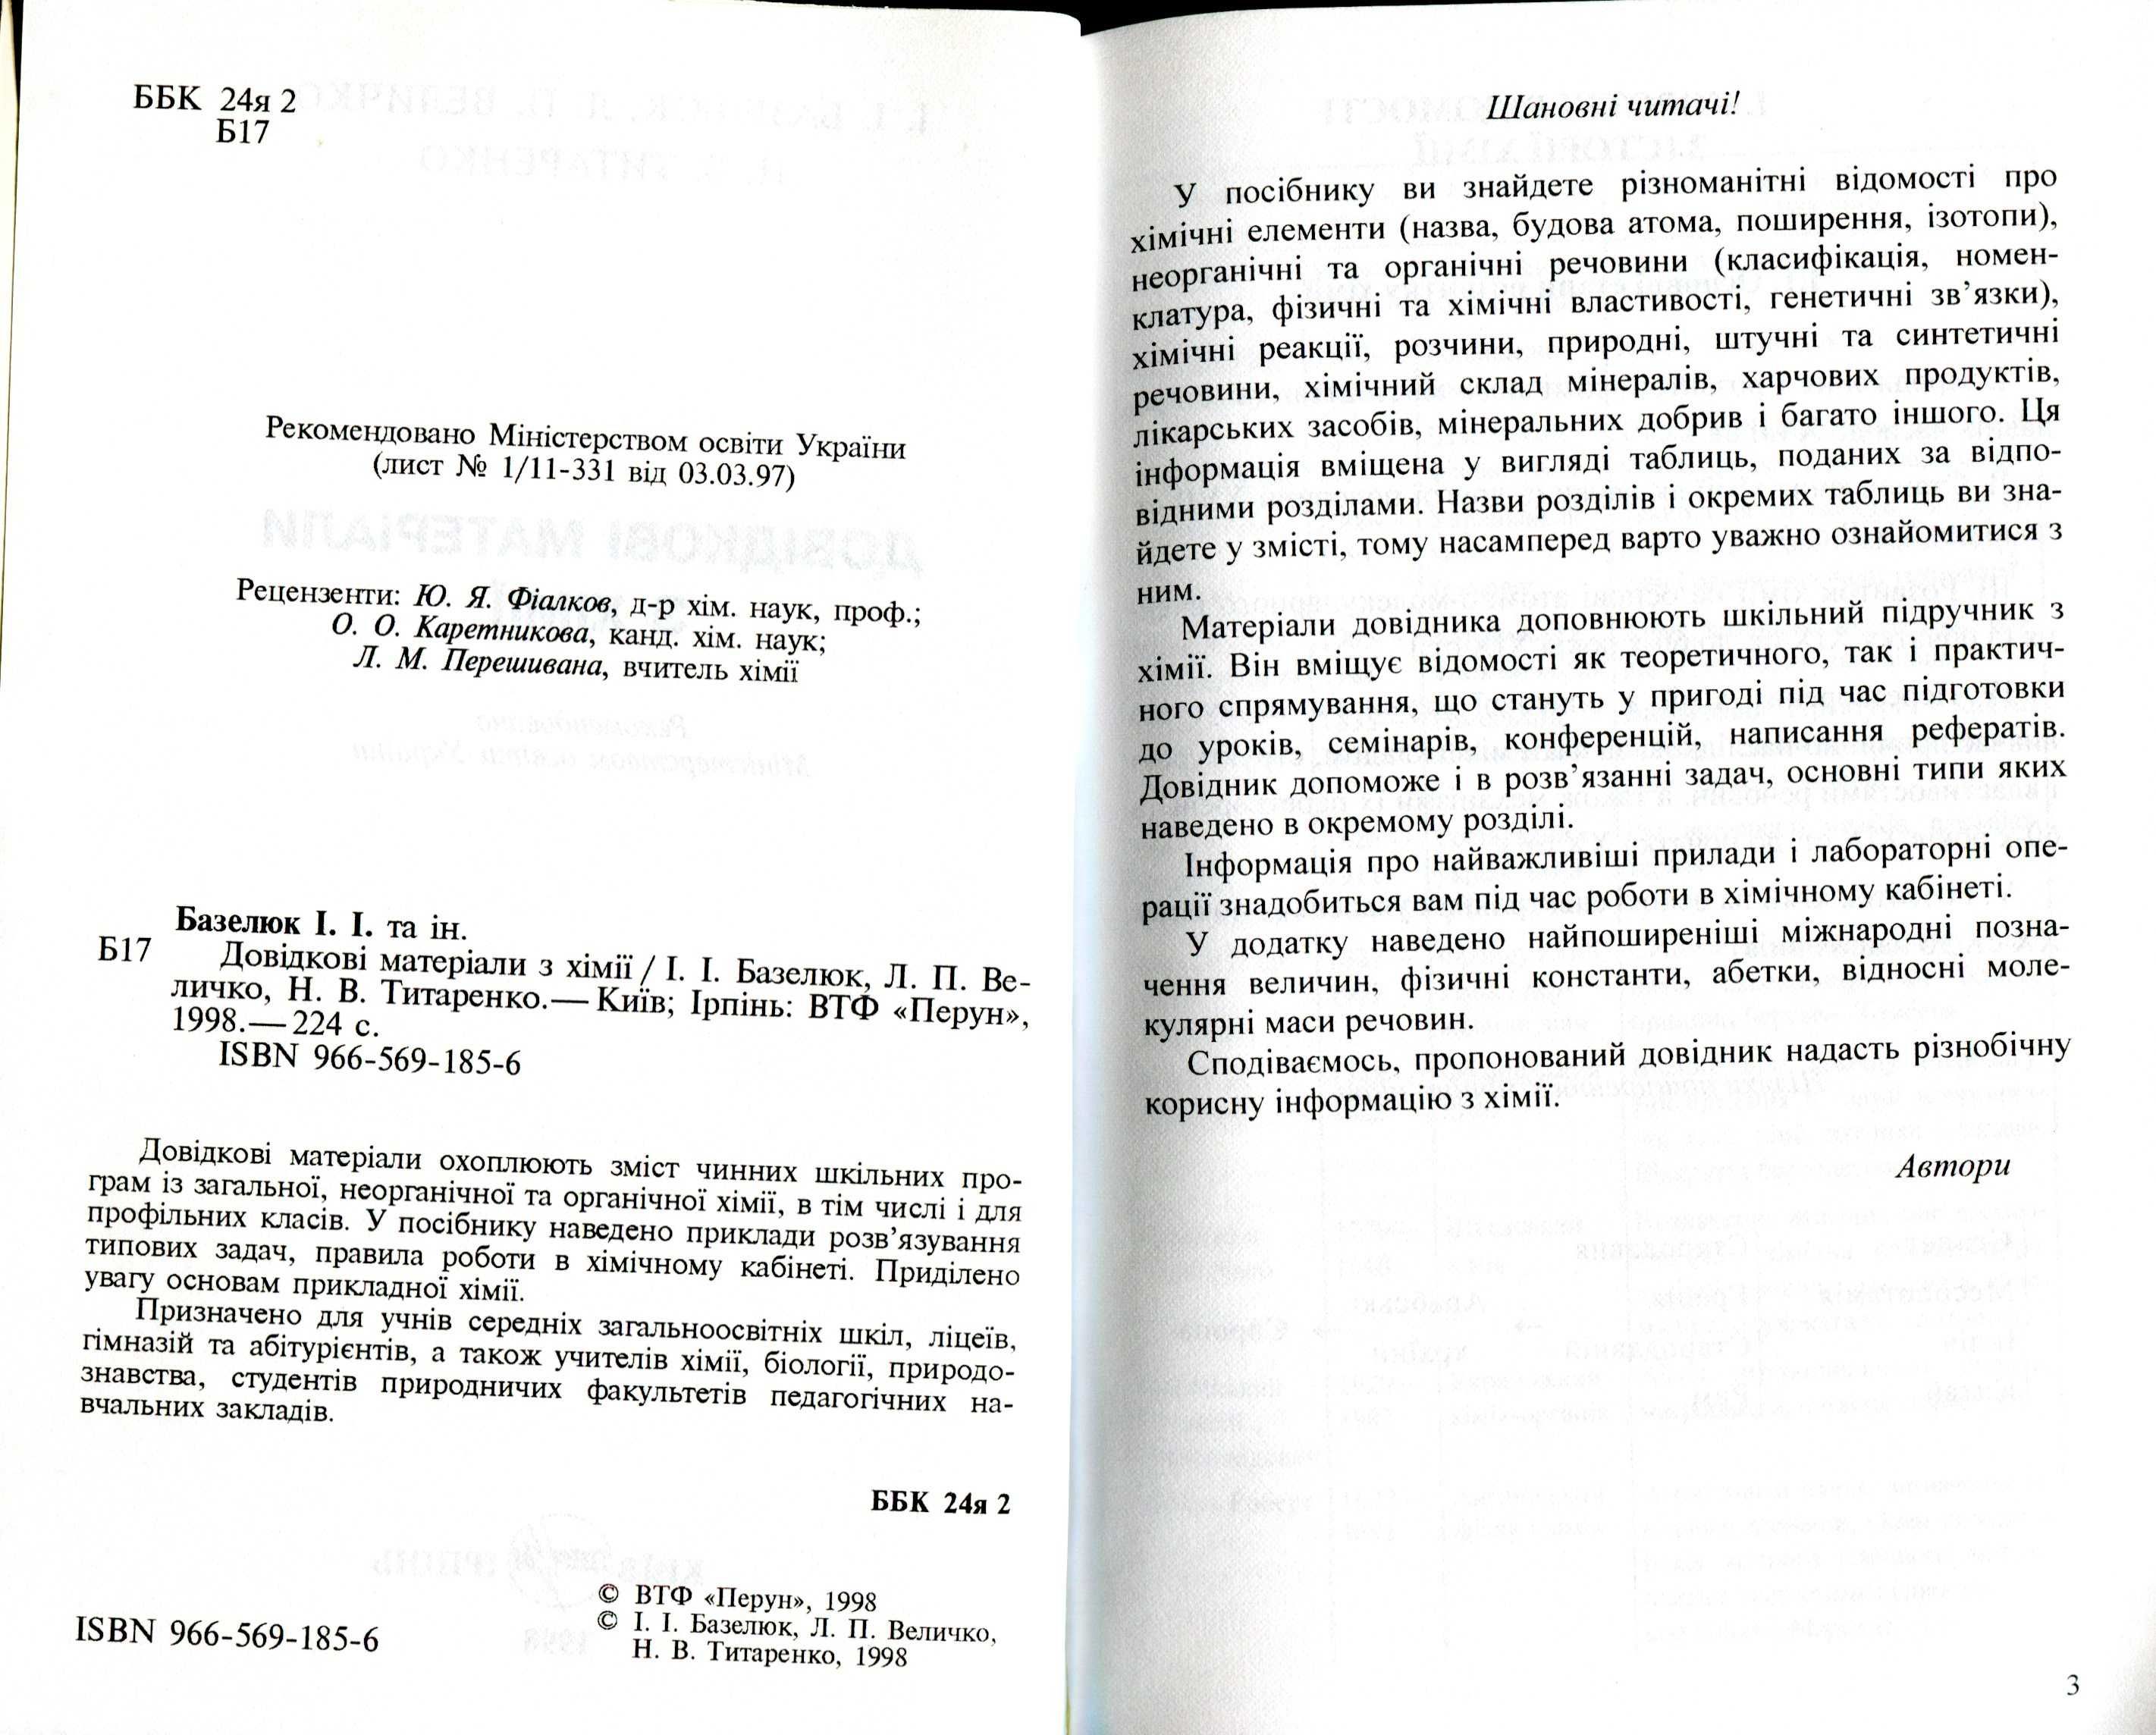 Базелюк І. Довідкові матеріали з хімії (1998) - 224 с.